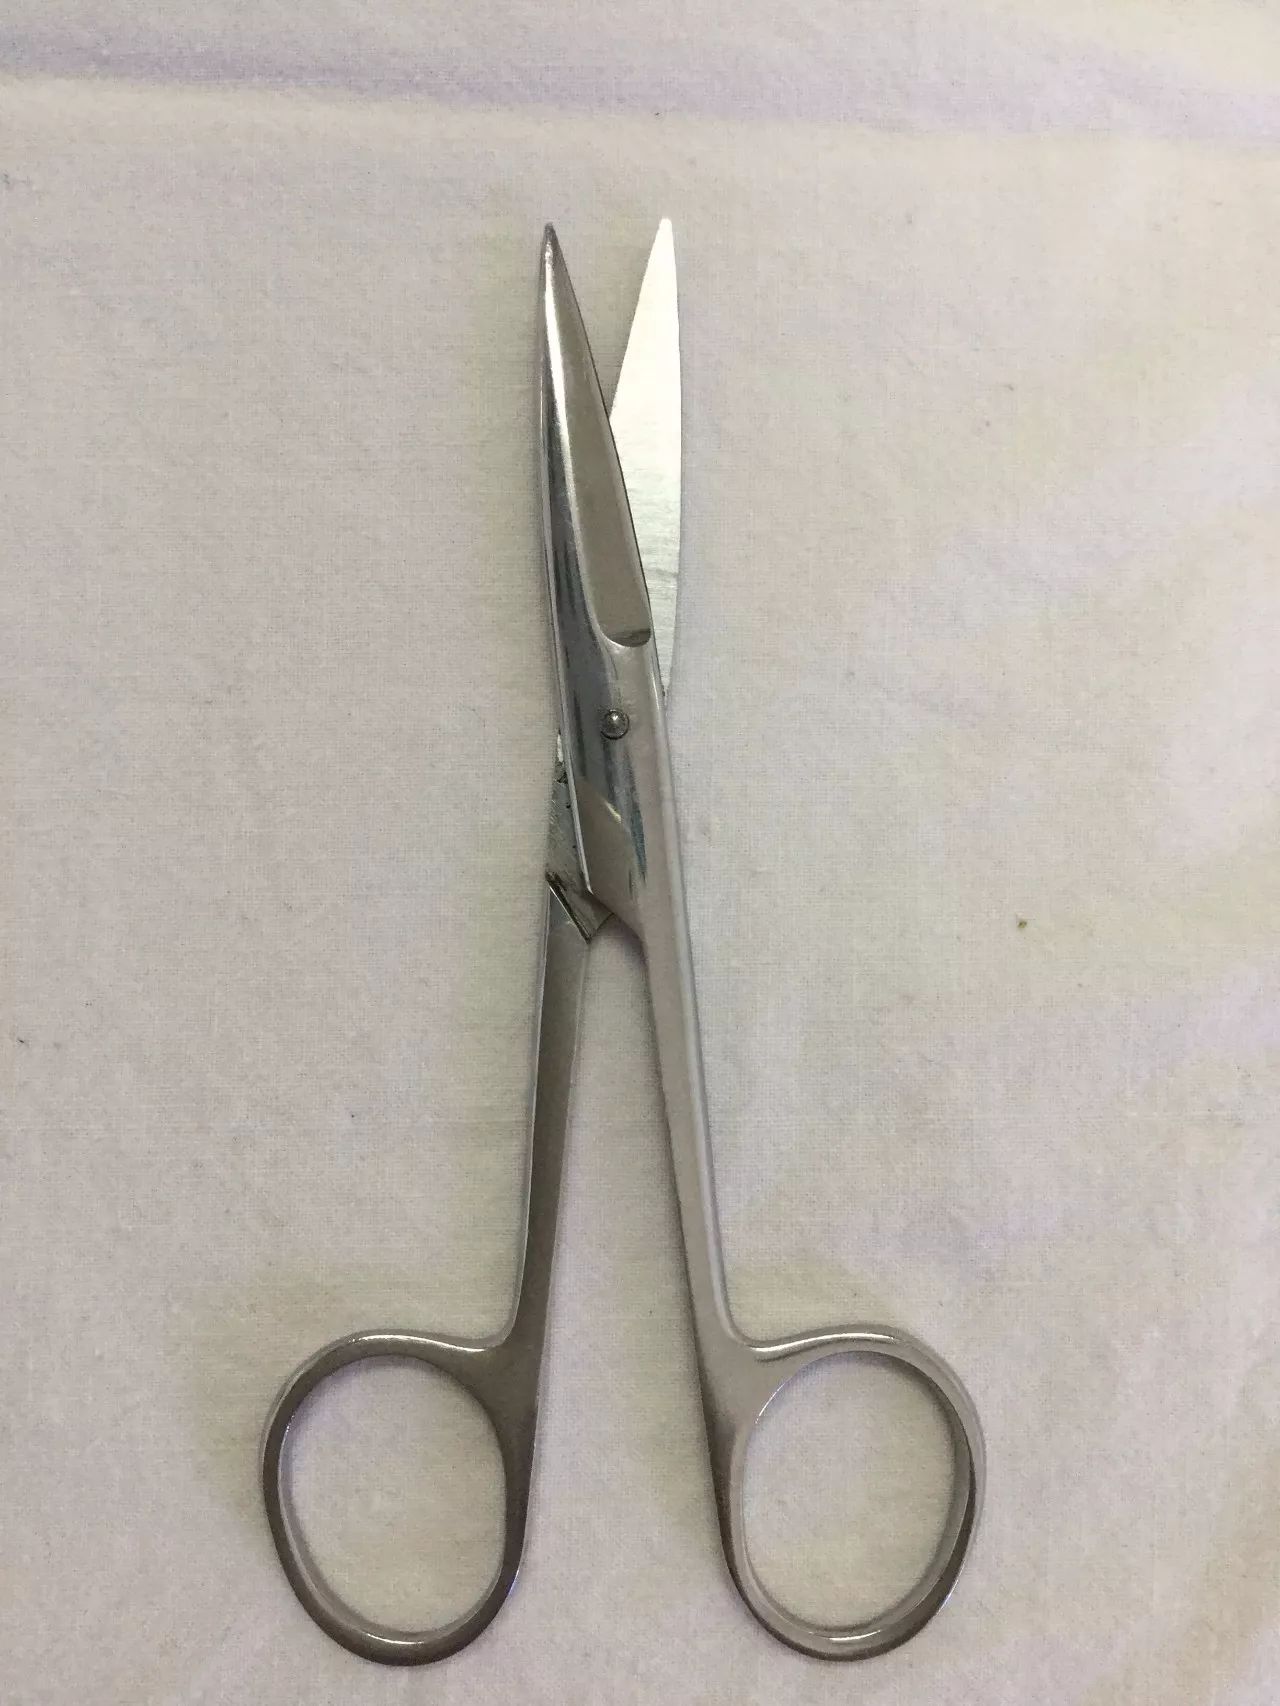 组织剪 尖端较钝圆,在分离或剪开时 不致损伤深部重要组织.